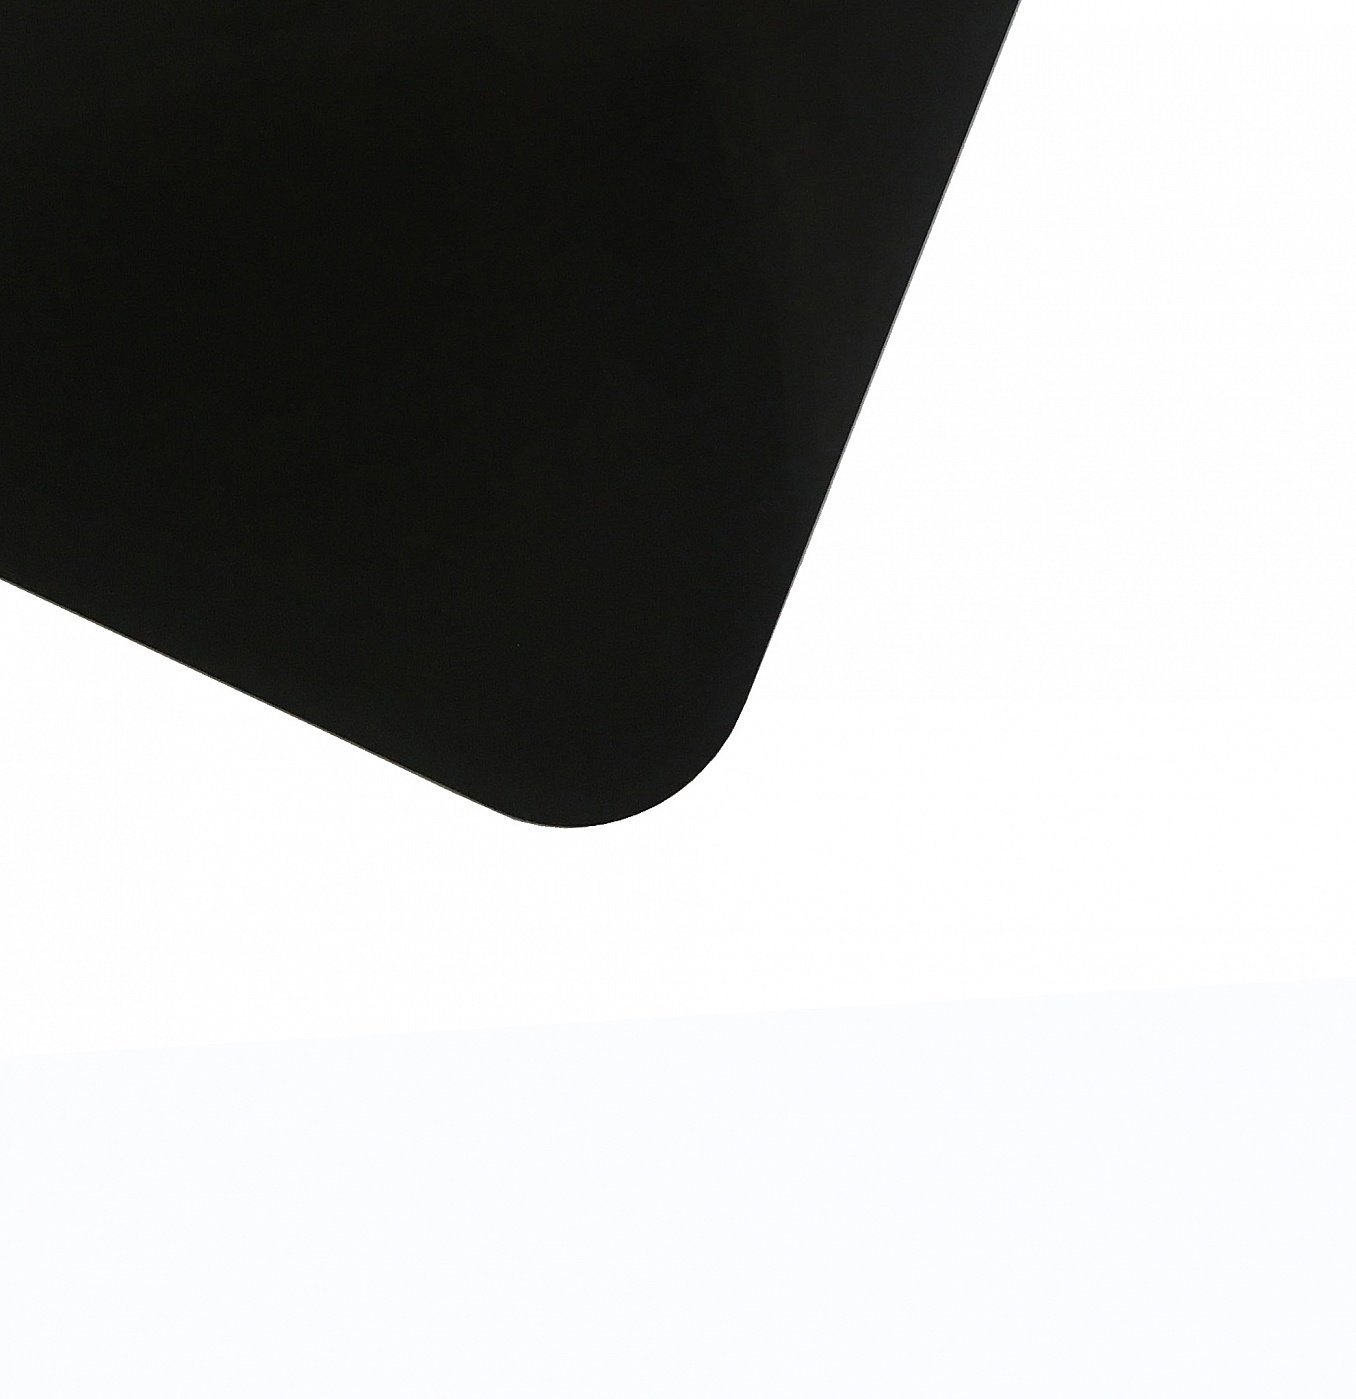 Планшет для пленэра из оргстекла 3 мм, под лист размера А4, цвет черный Dec-9082017 - фото 1